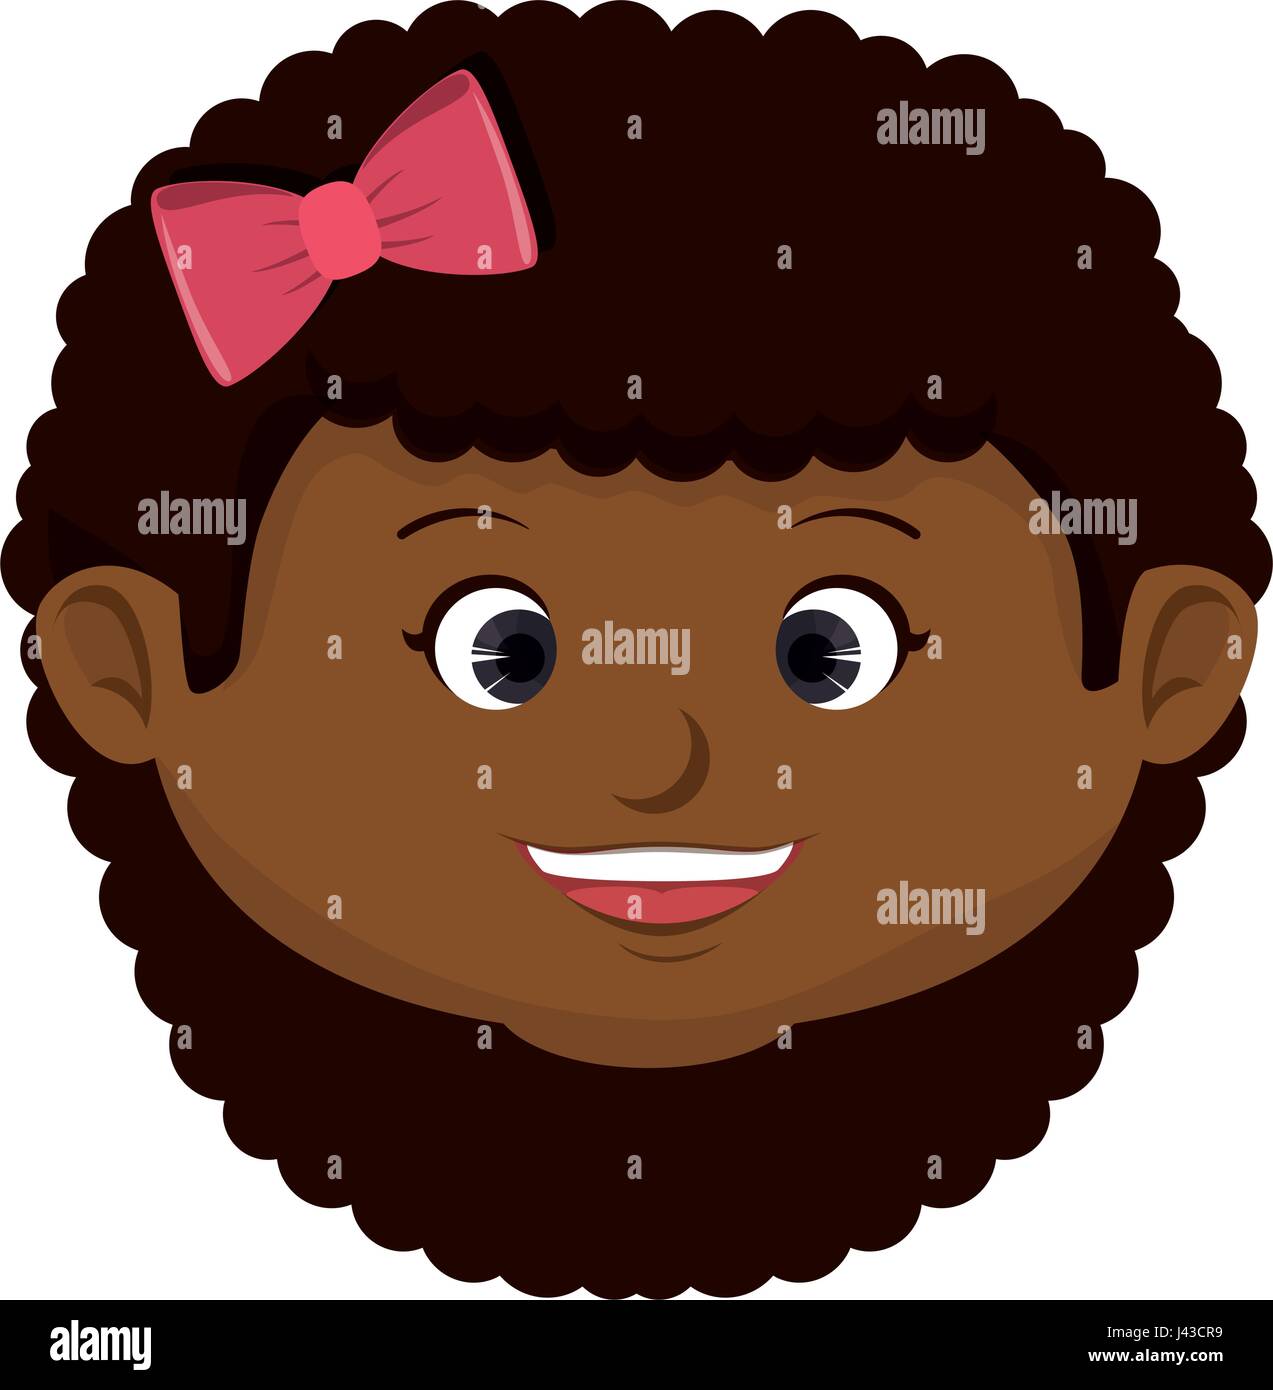 Mignon petit personnage fille noire Illustration de Vecteur